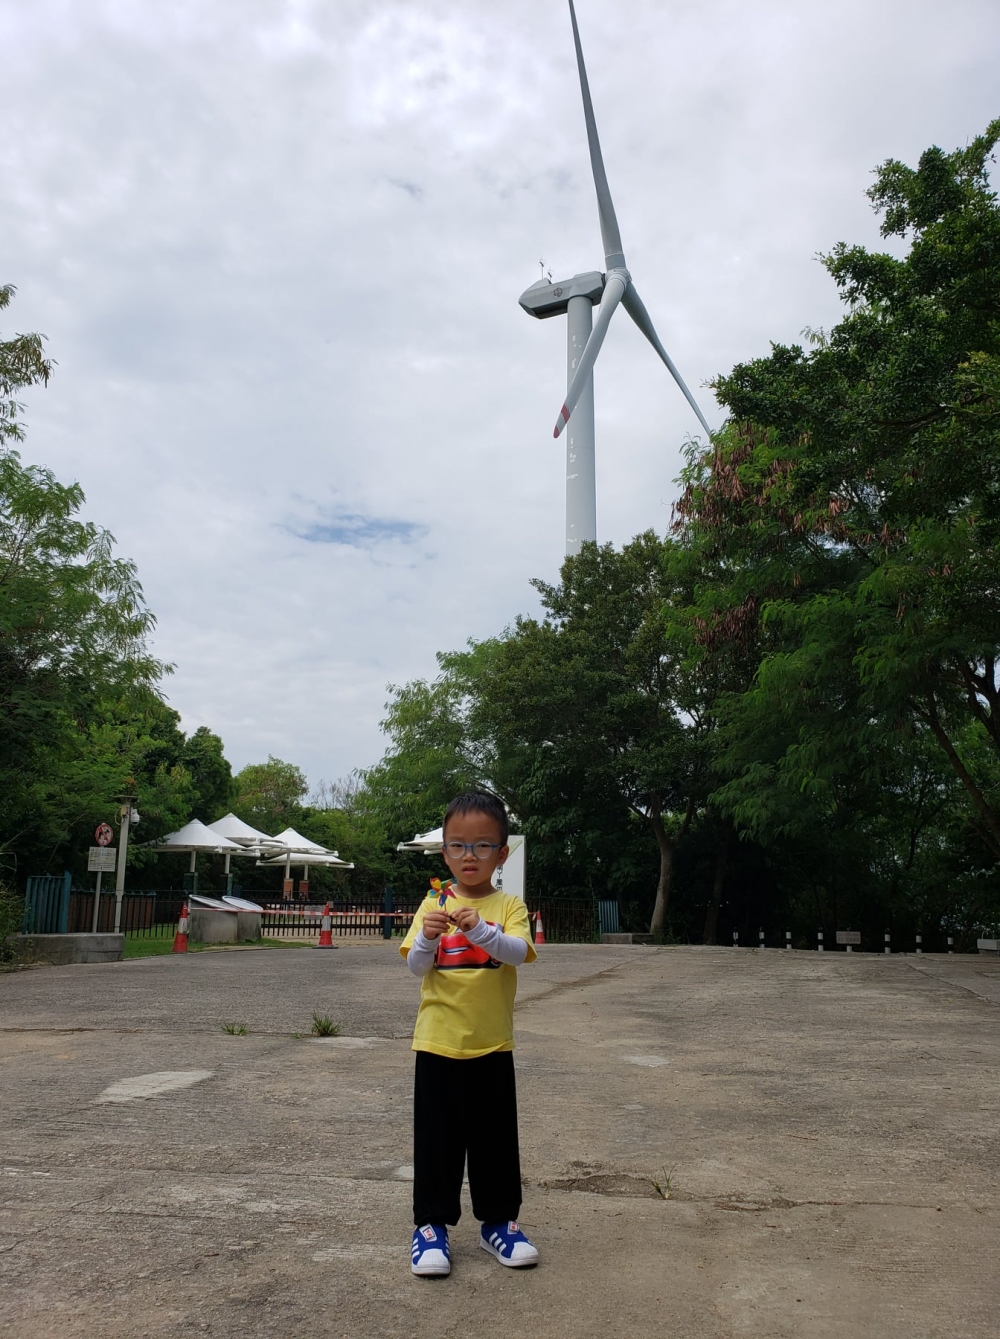 南丫島風采發電站是香港首座風力發電站。